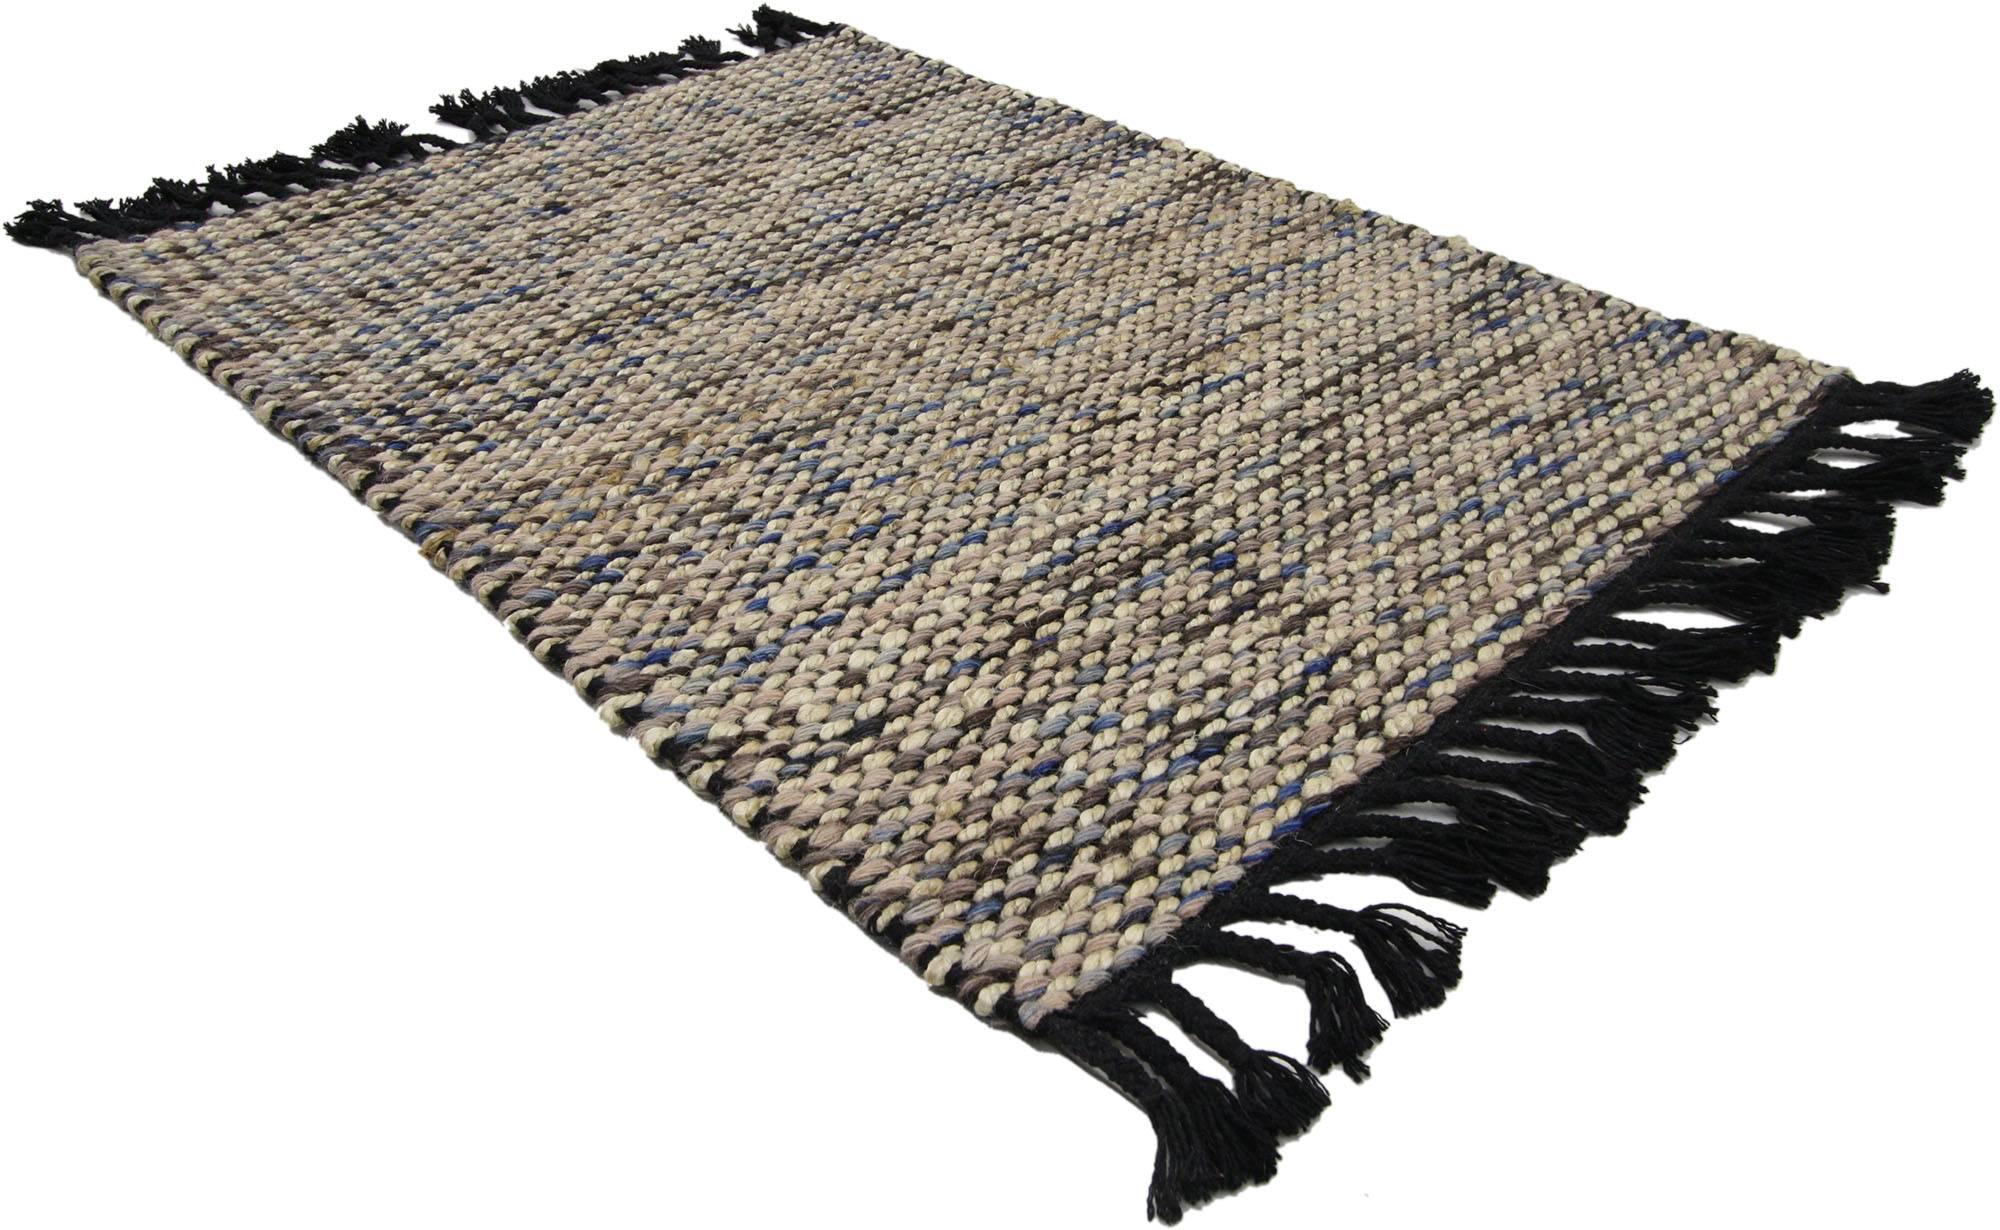 30381 new Dhurrie flat-weave Kilim rug with modern Lake House style, Custom area rug. Rafraîchissez votre espace et injectez de la couleur sans tomber dans la polychromie avec ce tapis transitionnel à motif de toile à gazon. D'un style subtil et